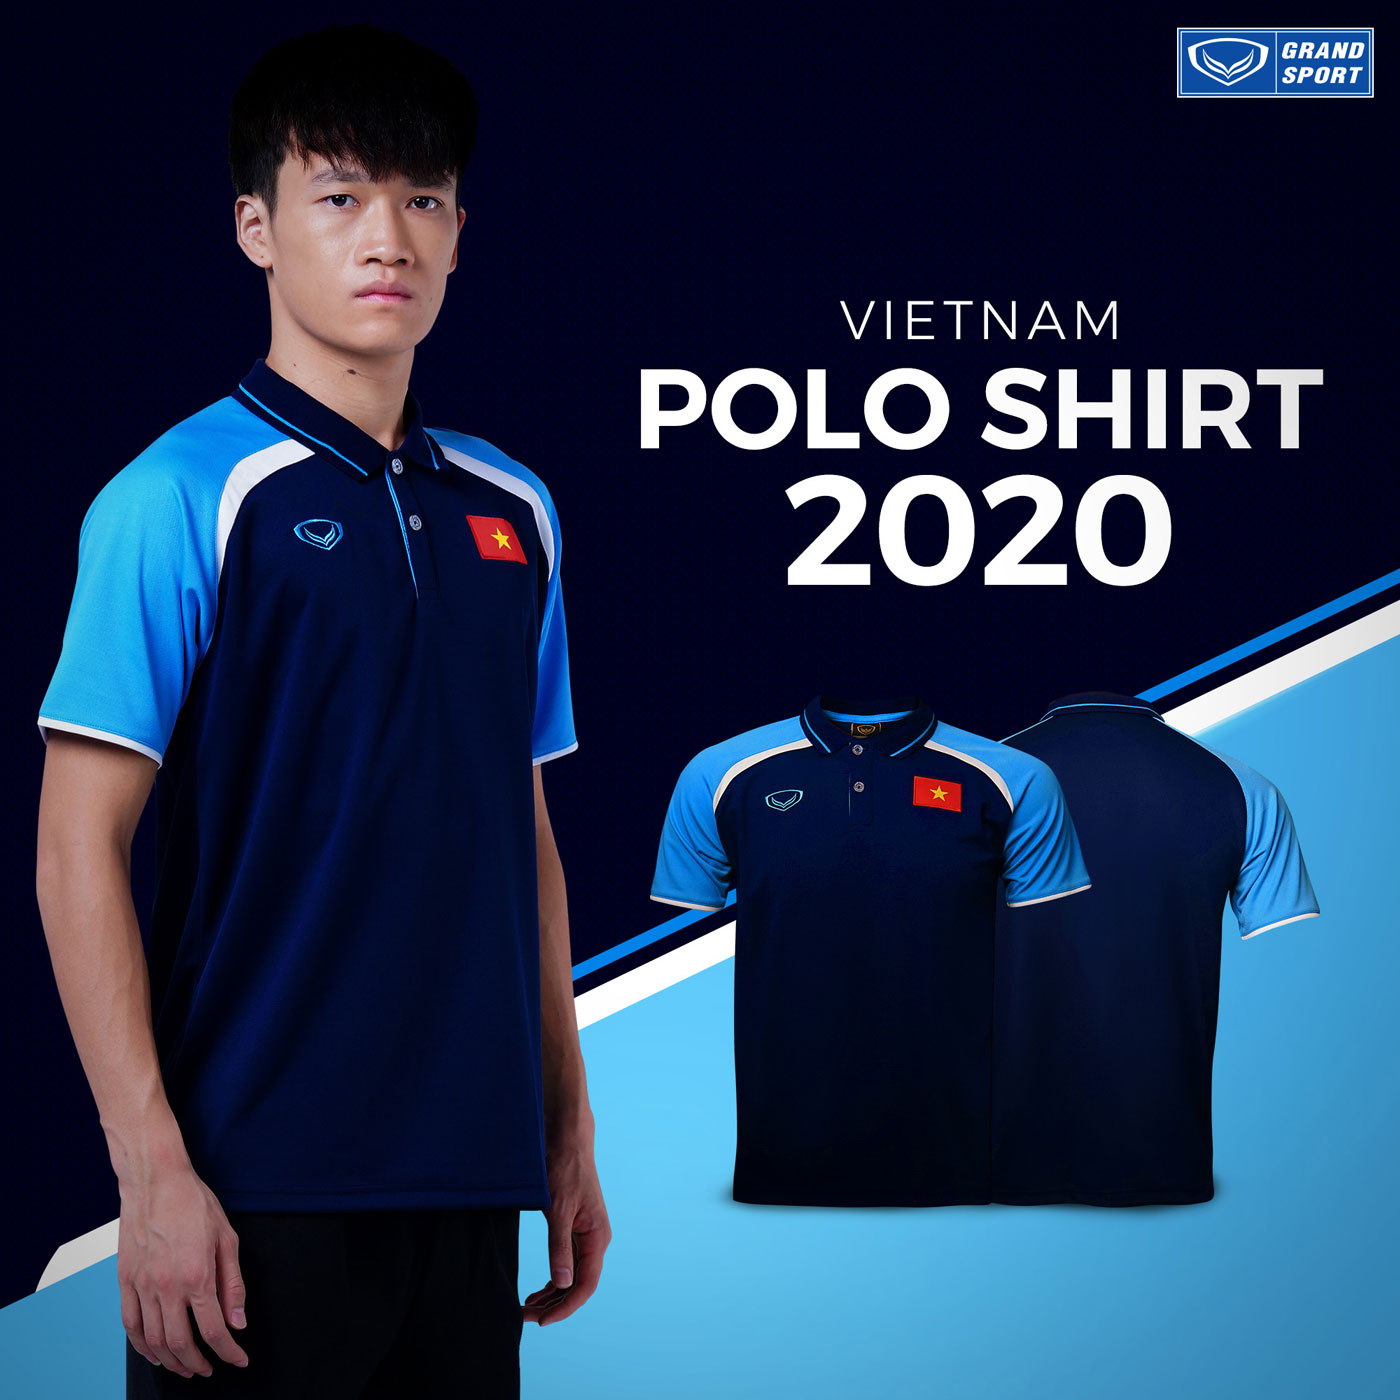 Polo Di Chuyển Đội tuyển Việt Nam 2020 Grand Sport Xanh Navy